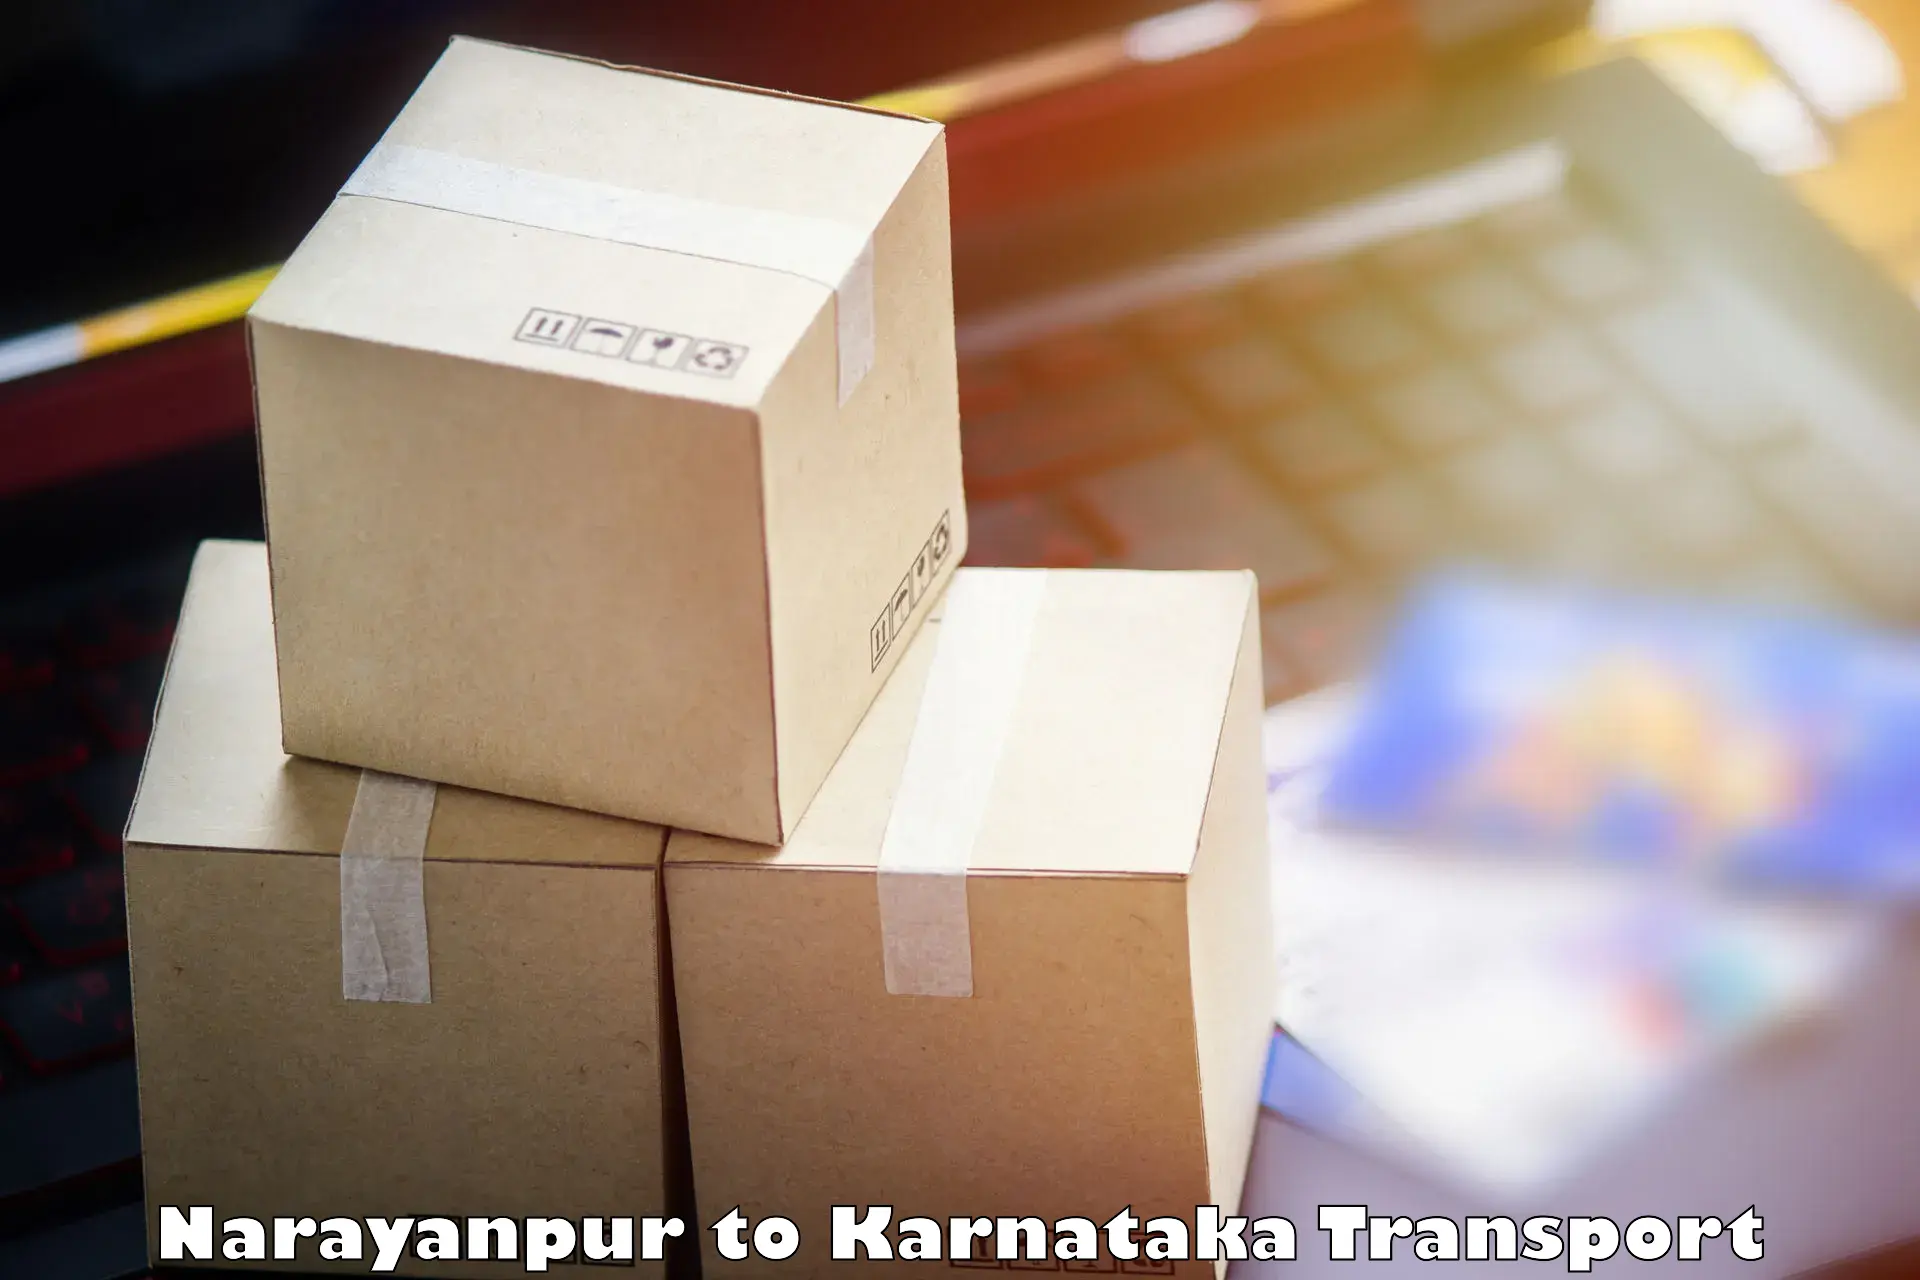 Pick up transport service Narayanpur to Siruguppa